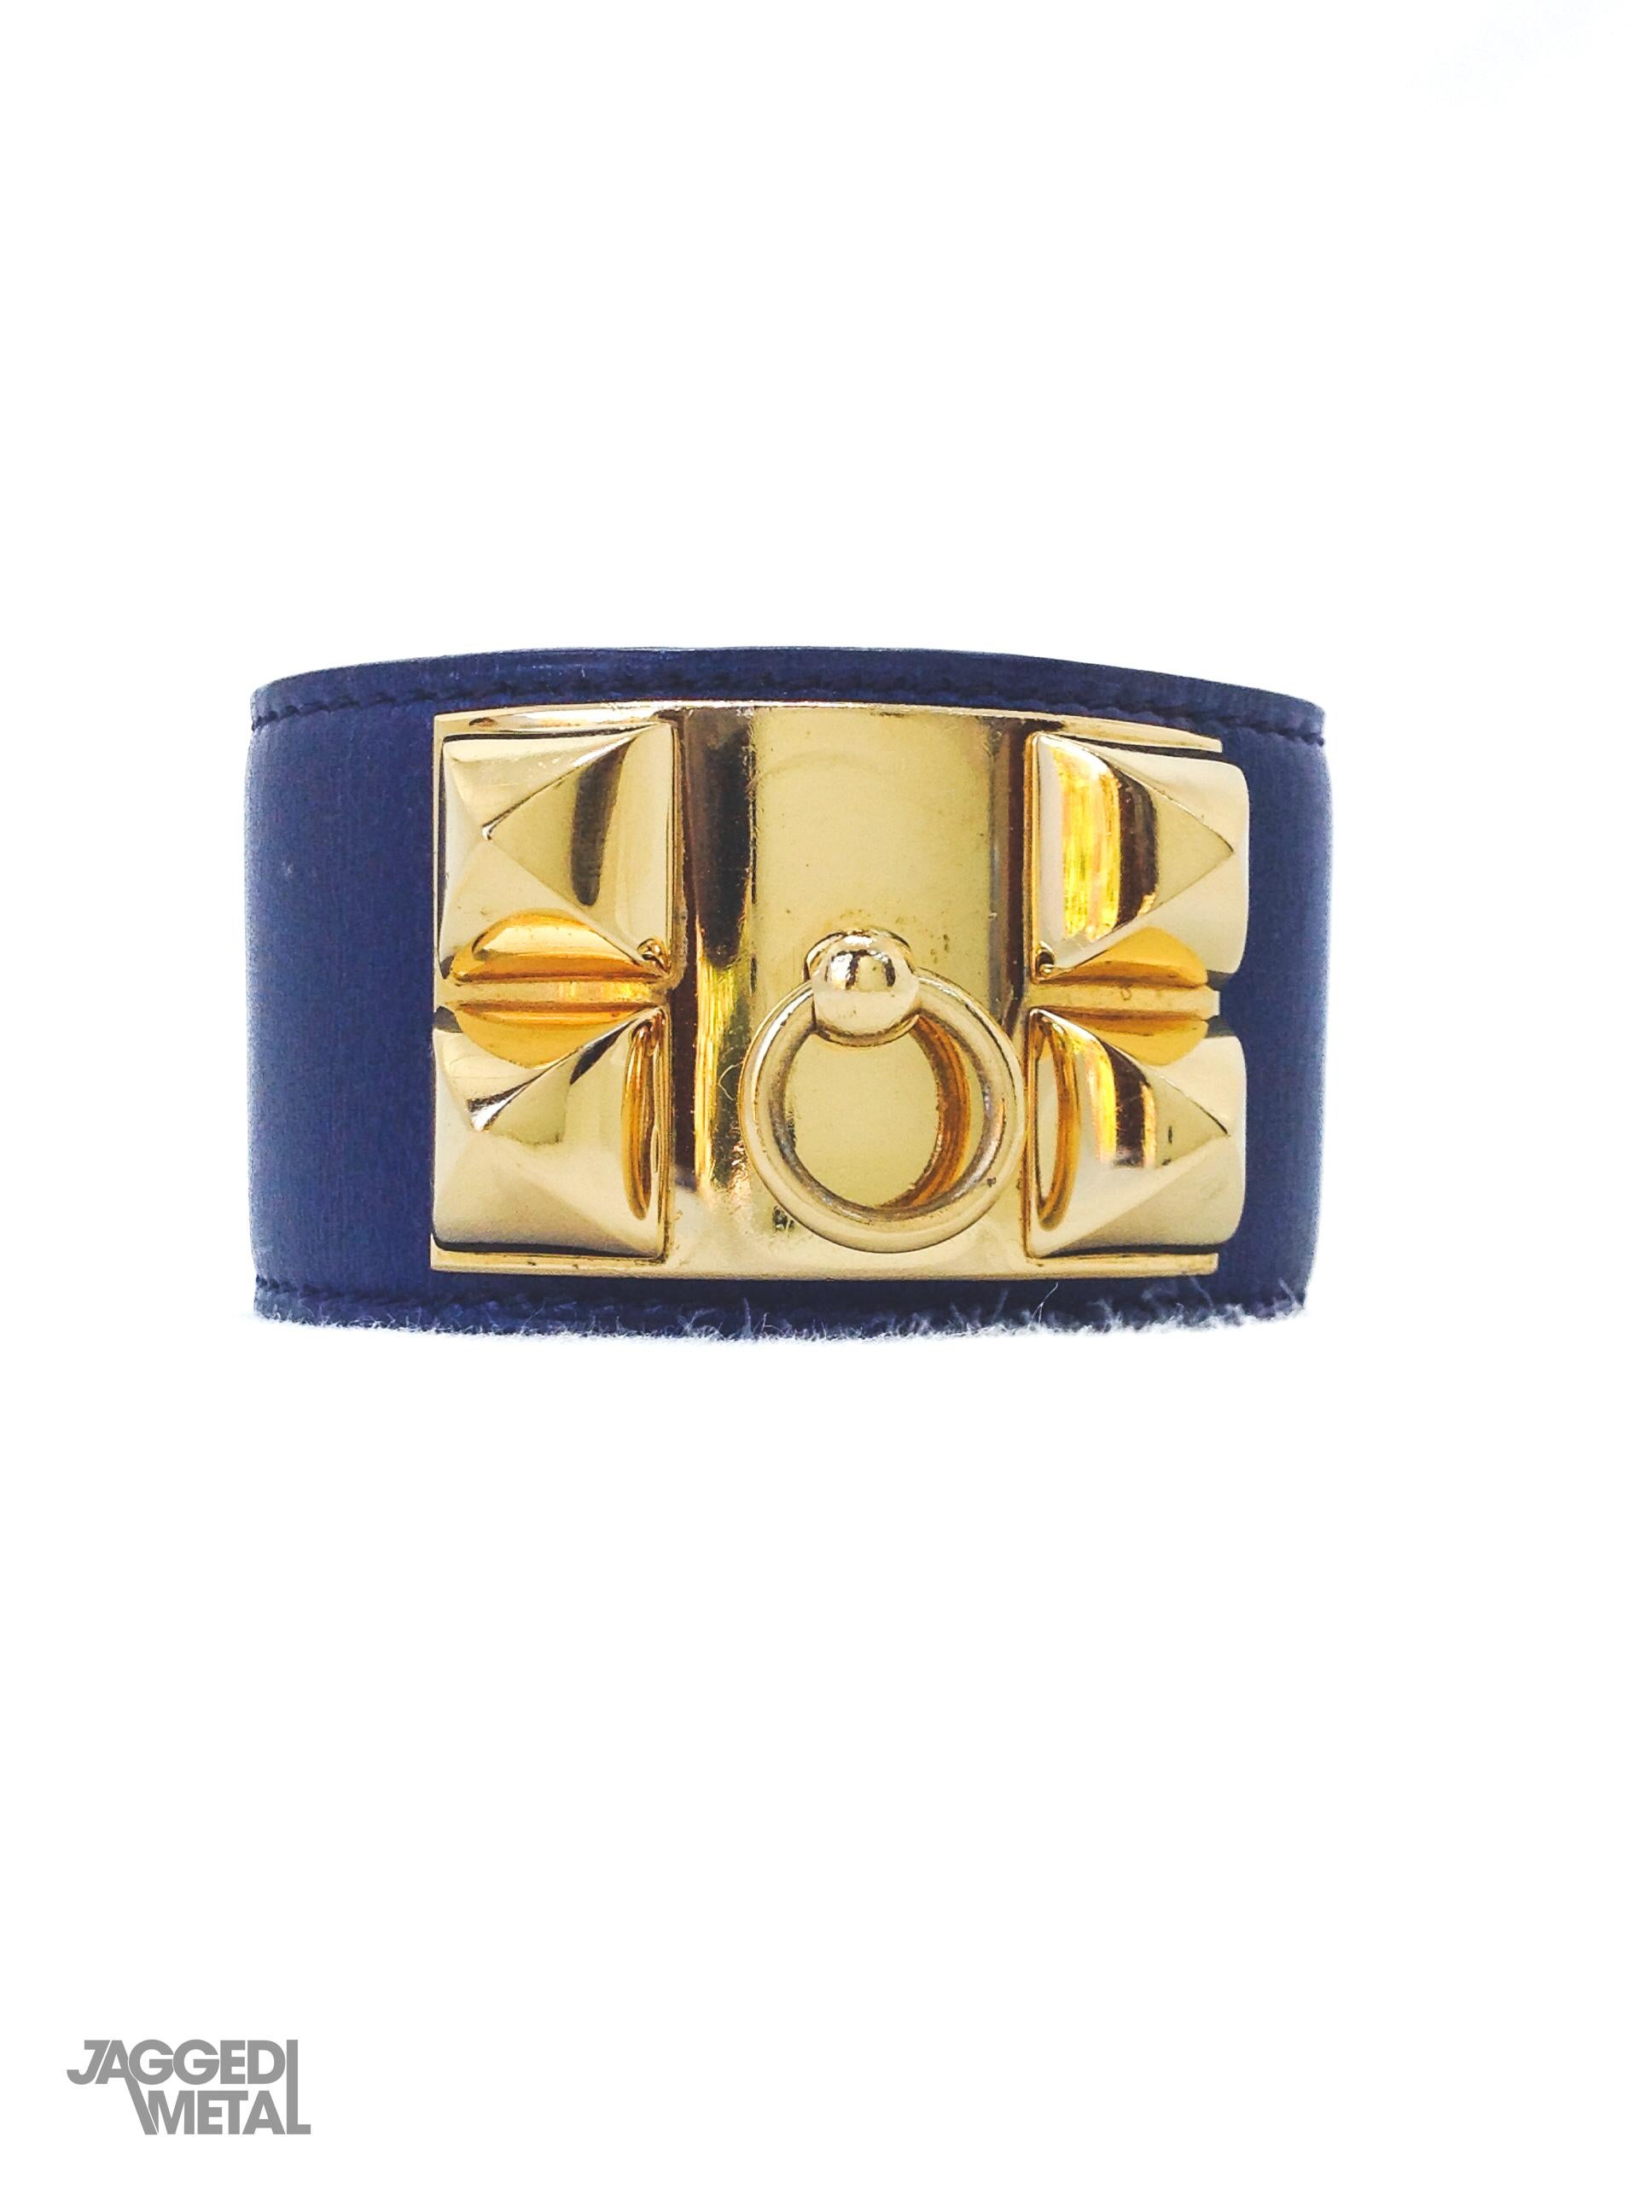 Women's or Men's Vintage HERMÈS Collier De Chien Cuff Bracelet 